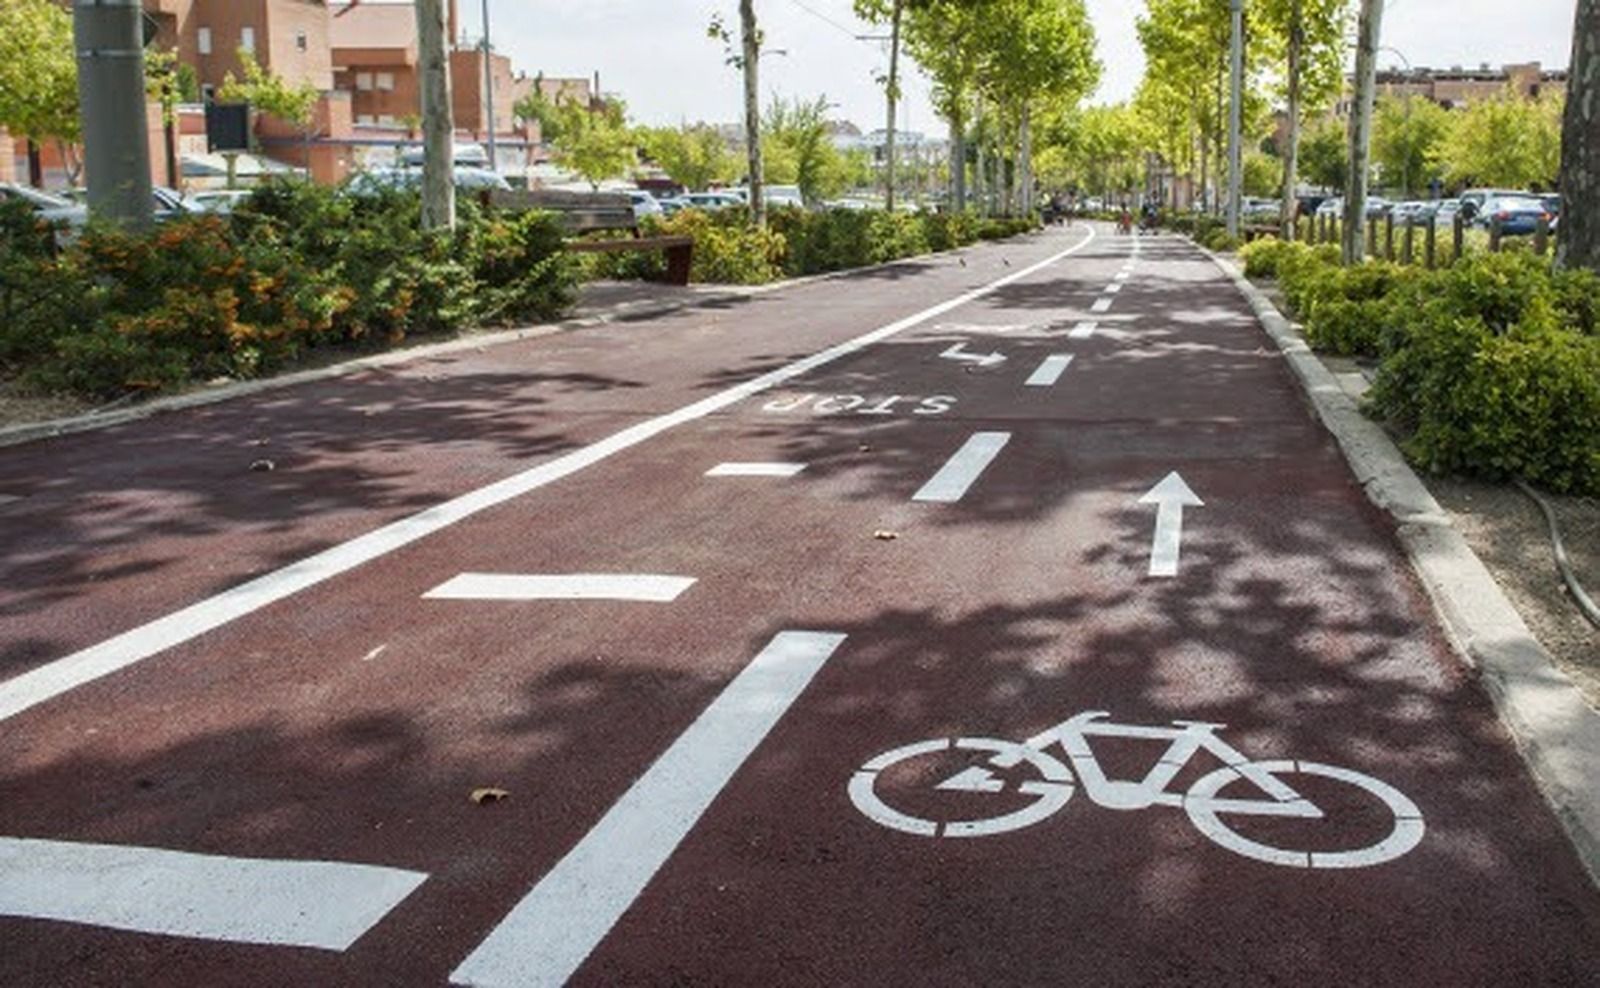  Boadilla recibirá 2,5 millones de los fondos europeos para ampliar el carril bici